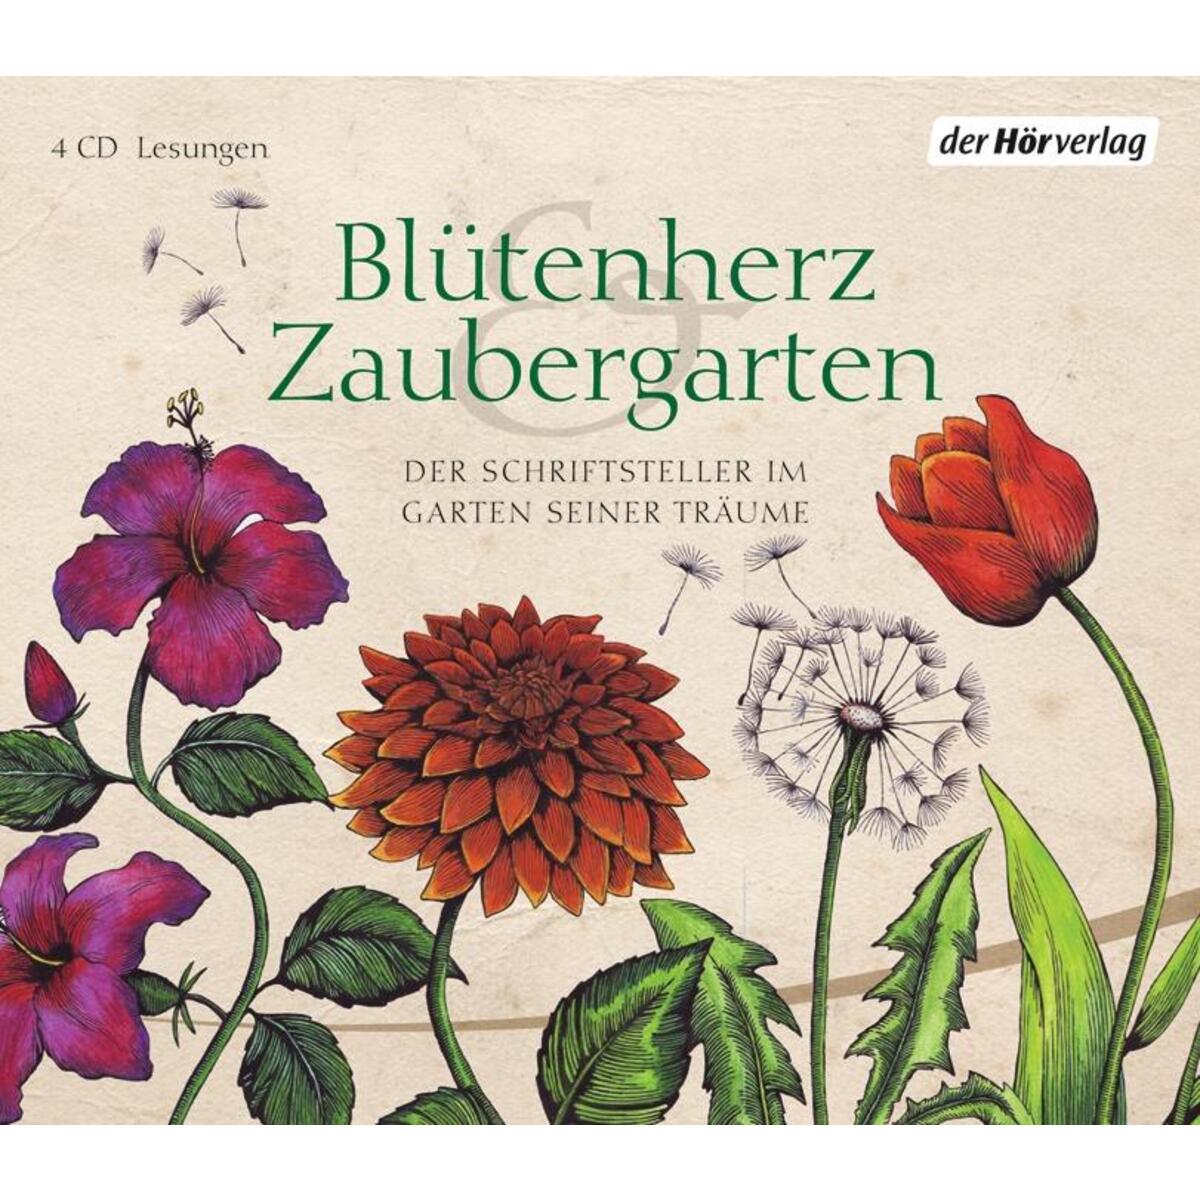 Hörbuch: »Blütenherz und Zaubergarten« (4 CDs) von der Hörverlag